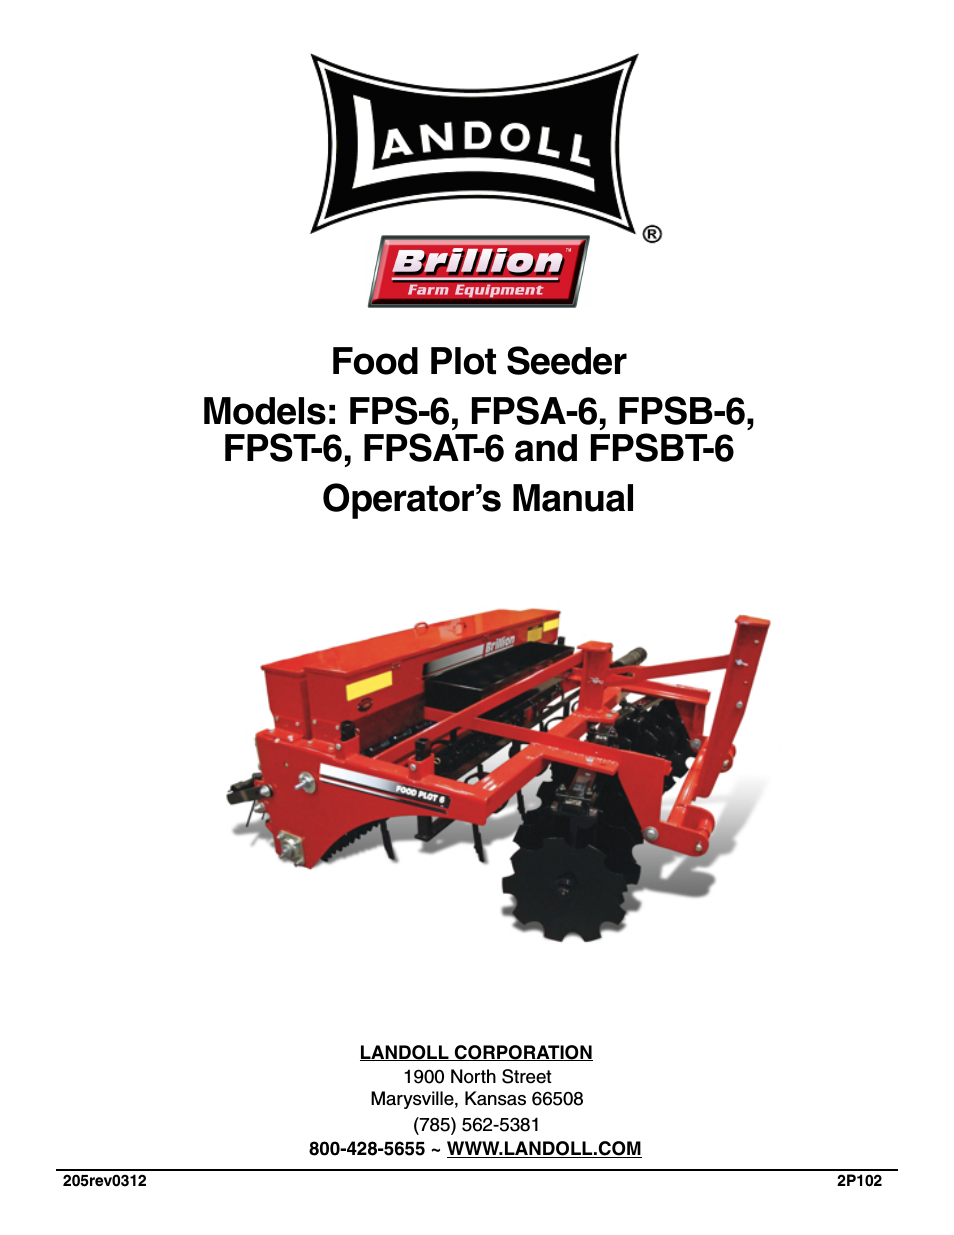 FPSB-6 Food Plot Seeder